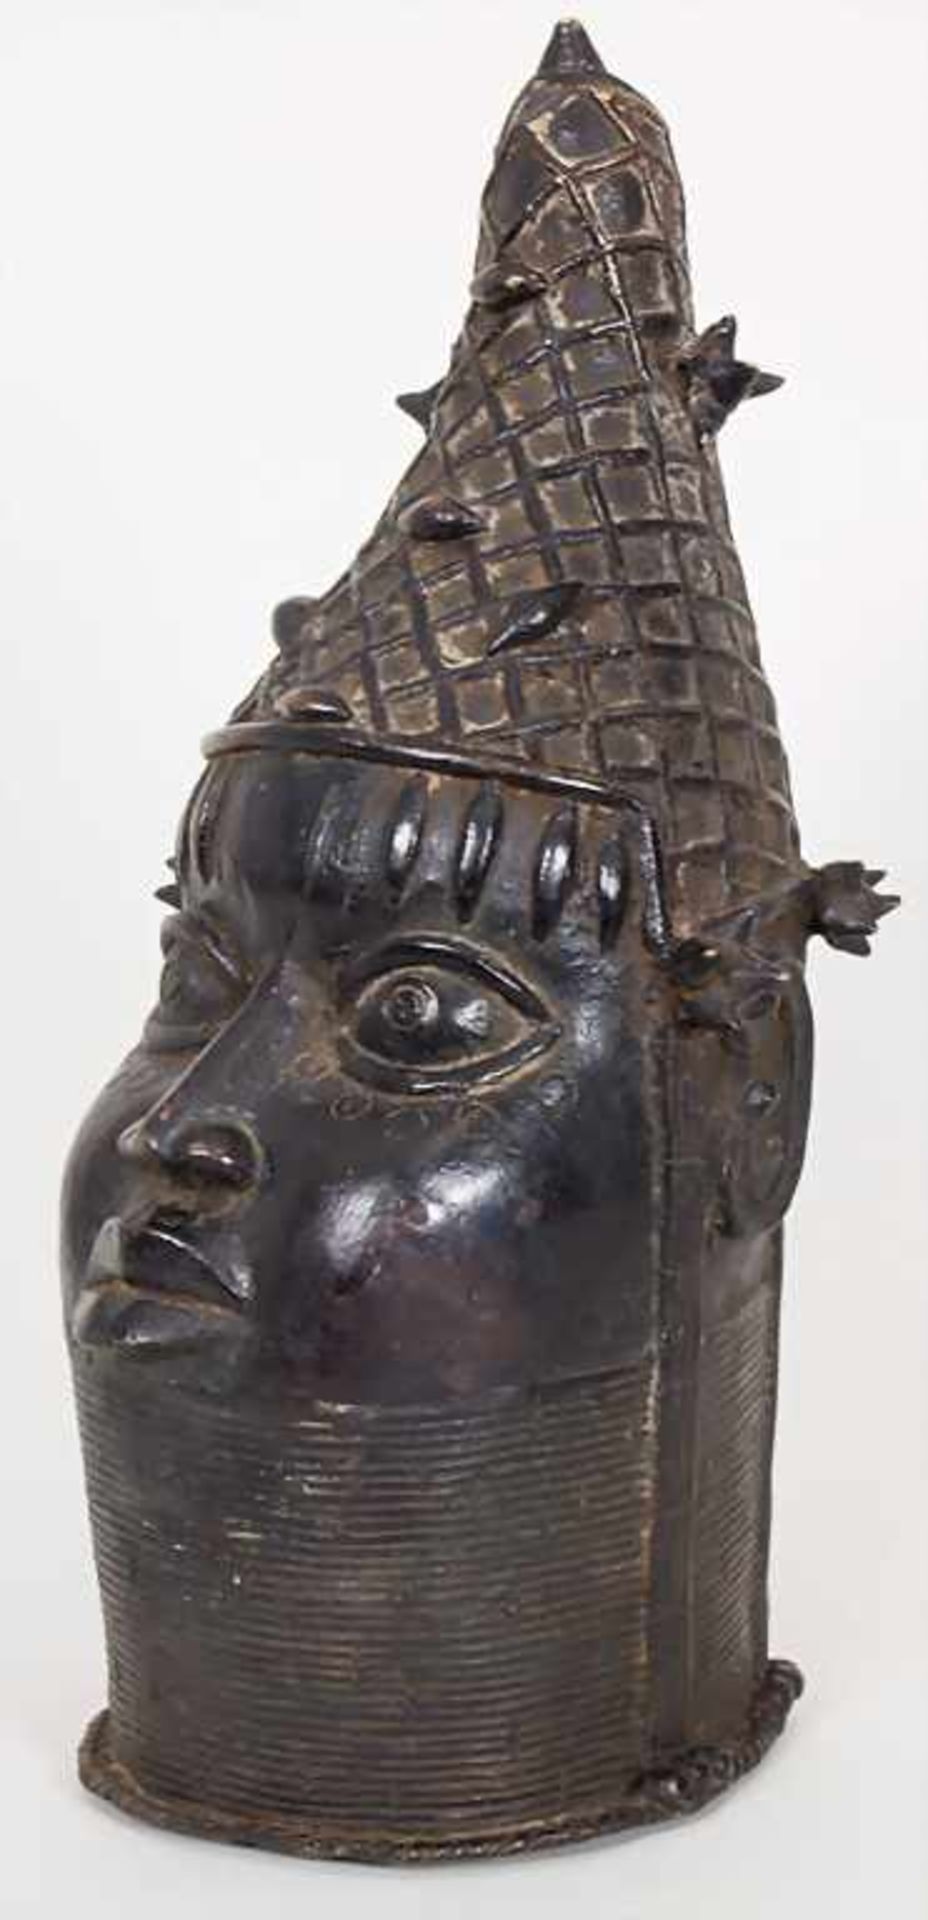 Gedenkkopf, Benin, Nigeria 2. Hälfte 20. Jh.Material: Bronze, braun patiniert,Höhe: 44 cm,Zustand: